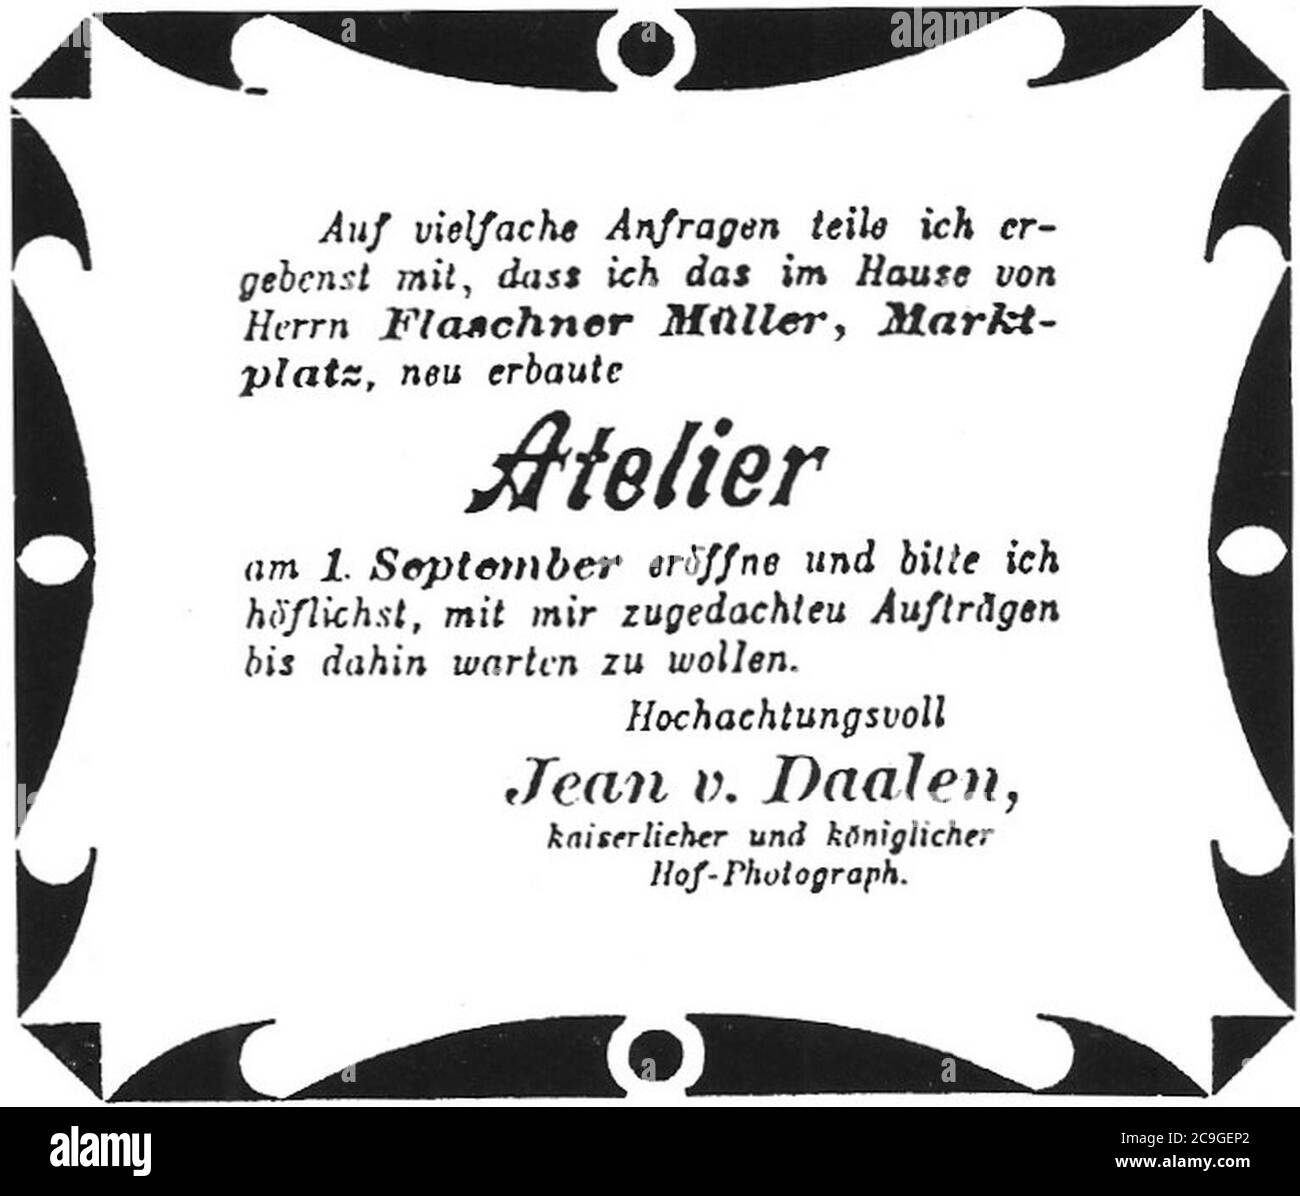 J v Daalen - Anzeige in Remszeitung vom 9.8.1890 (GPh31). Stock Photo